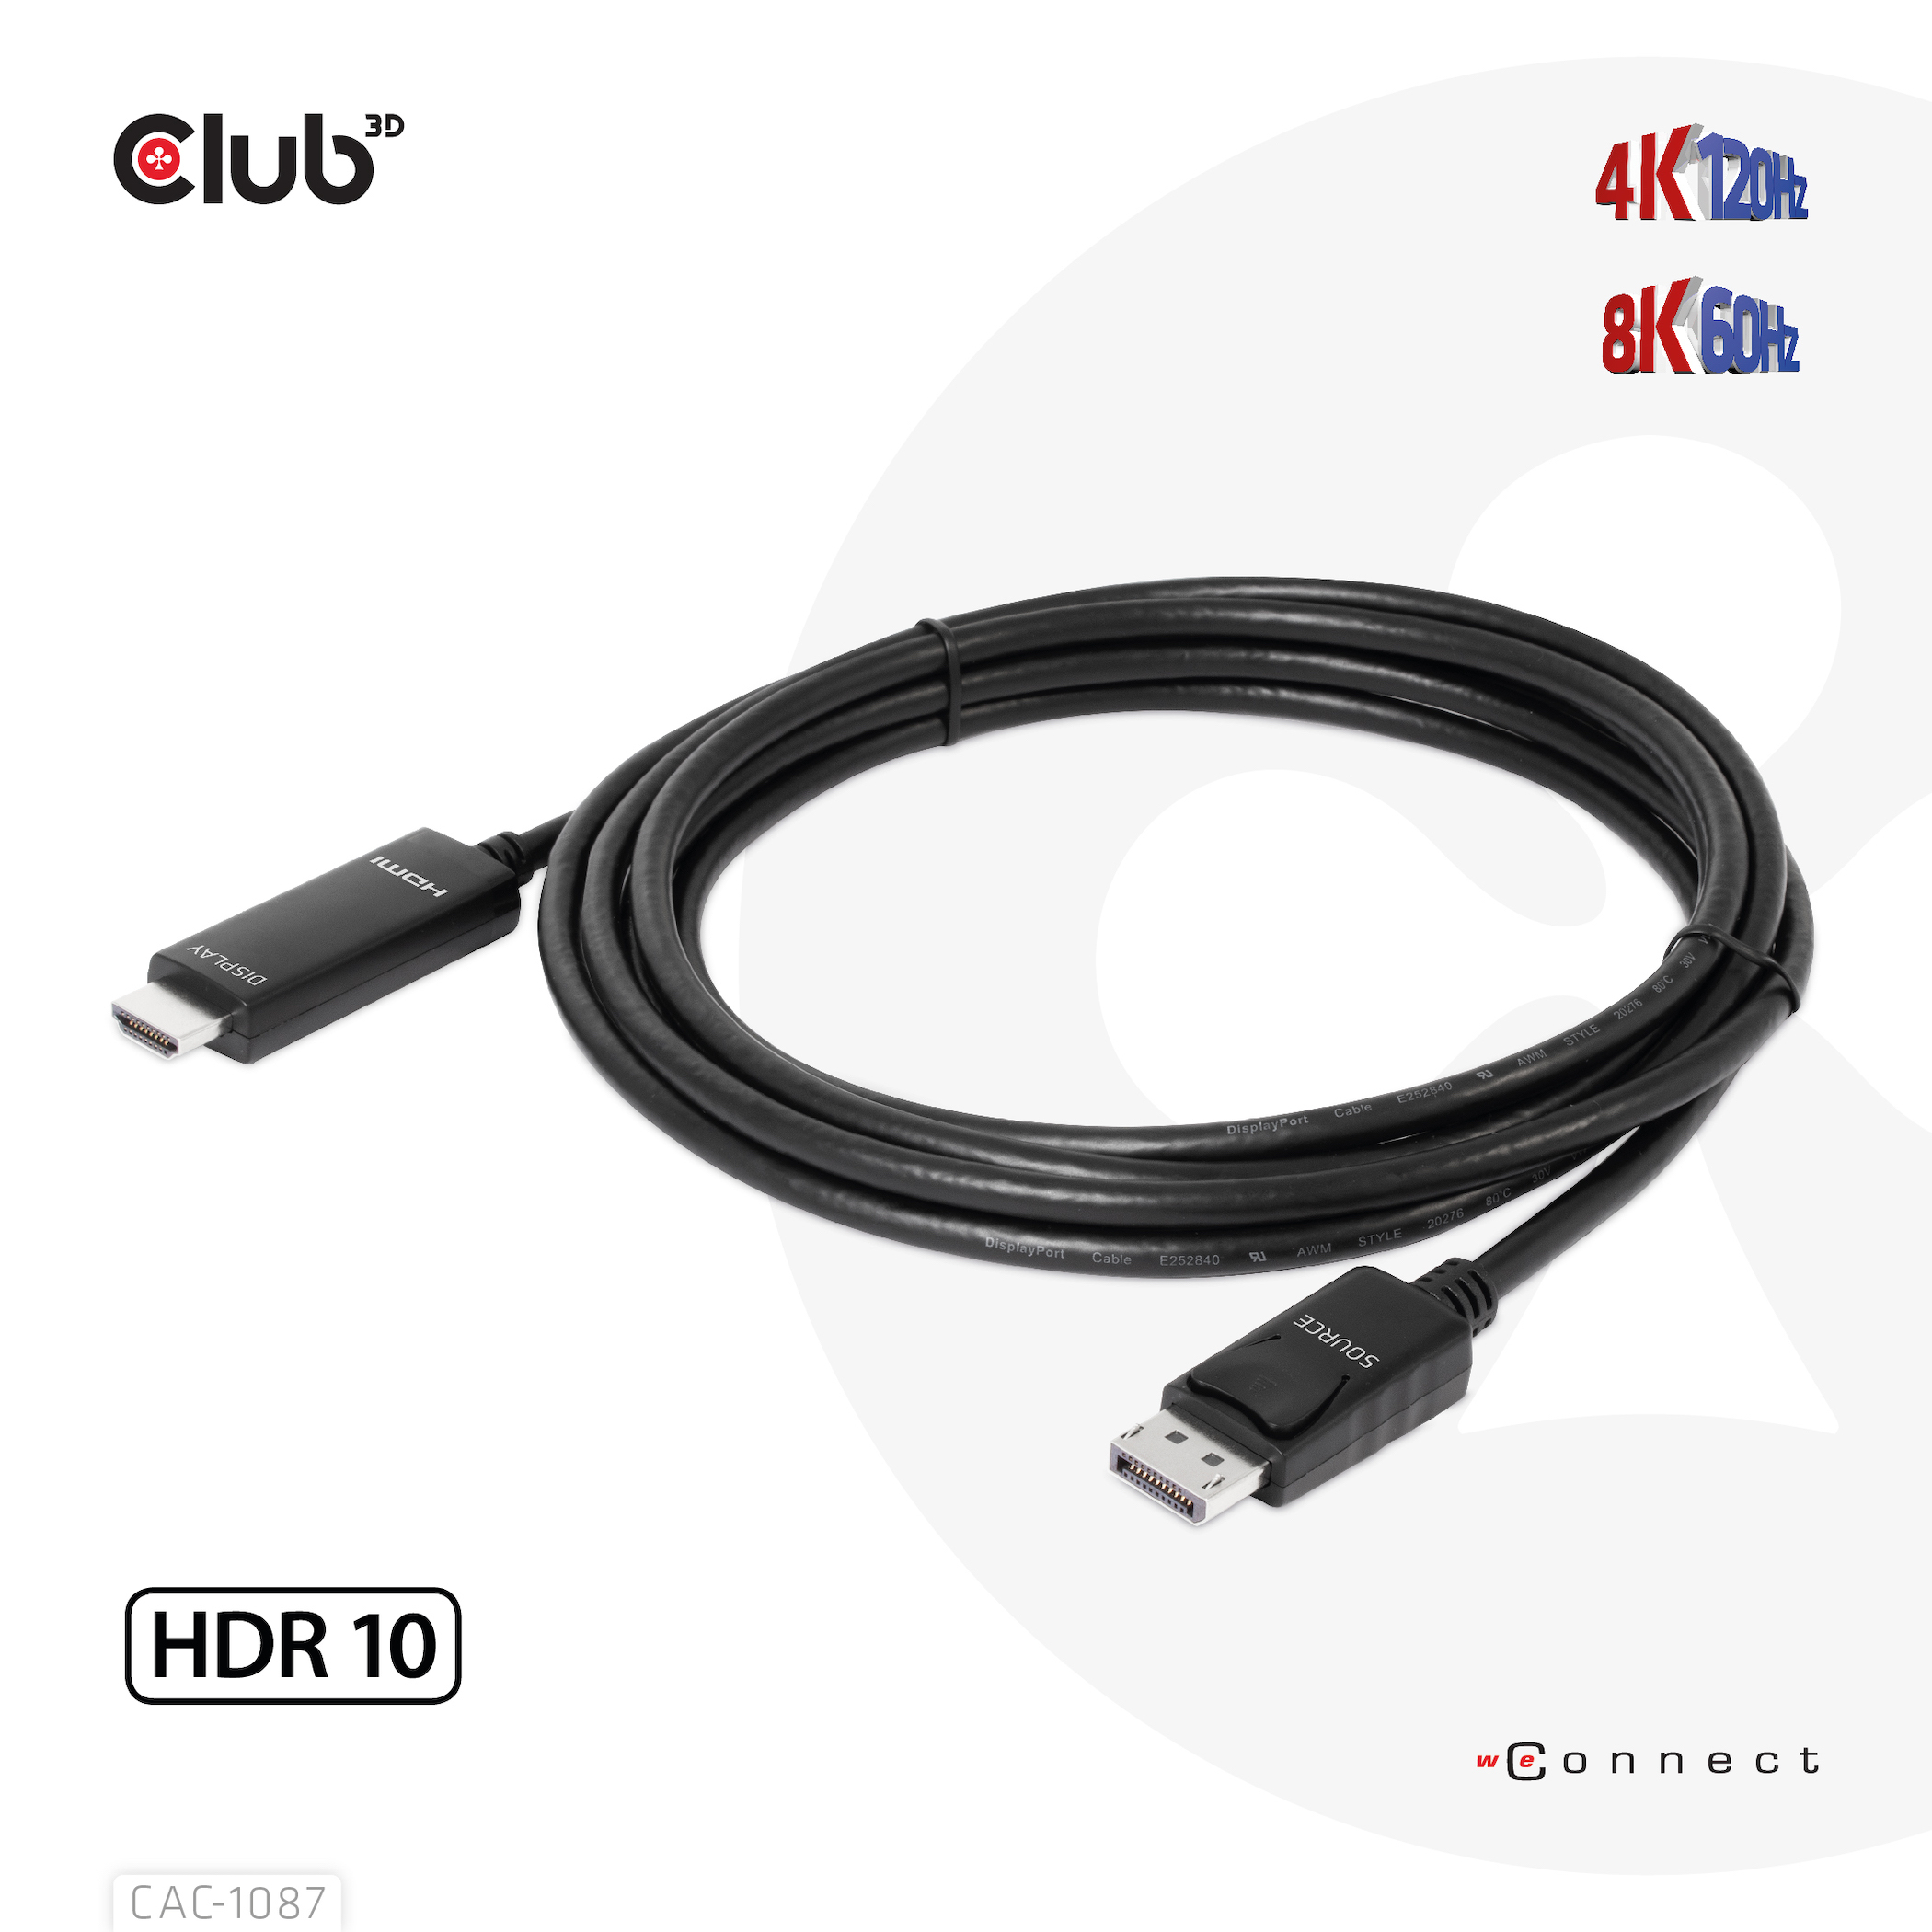 Club3D Kabel DisplayPort 1.4 > HDMI HDR 8K60Hz aktiv 3m retail